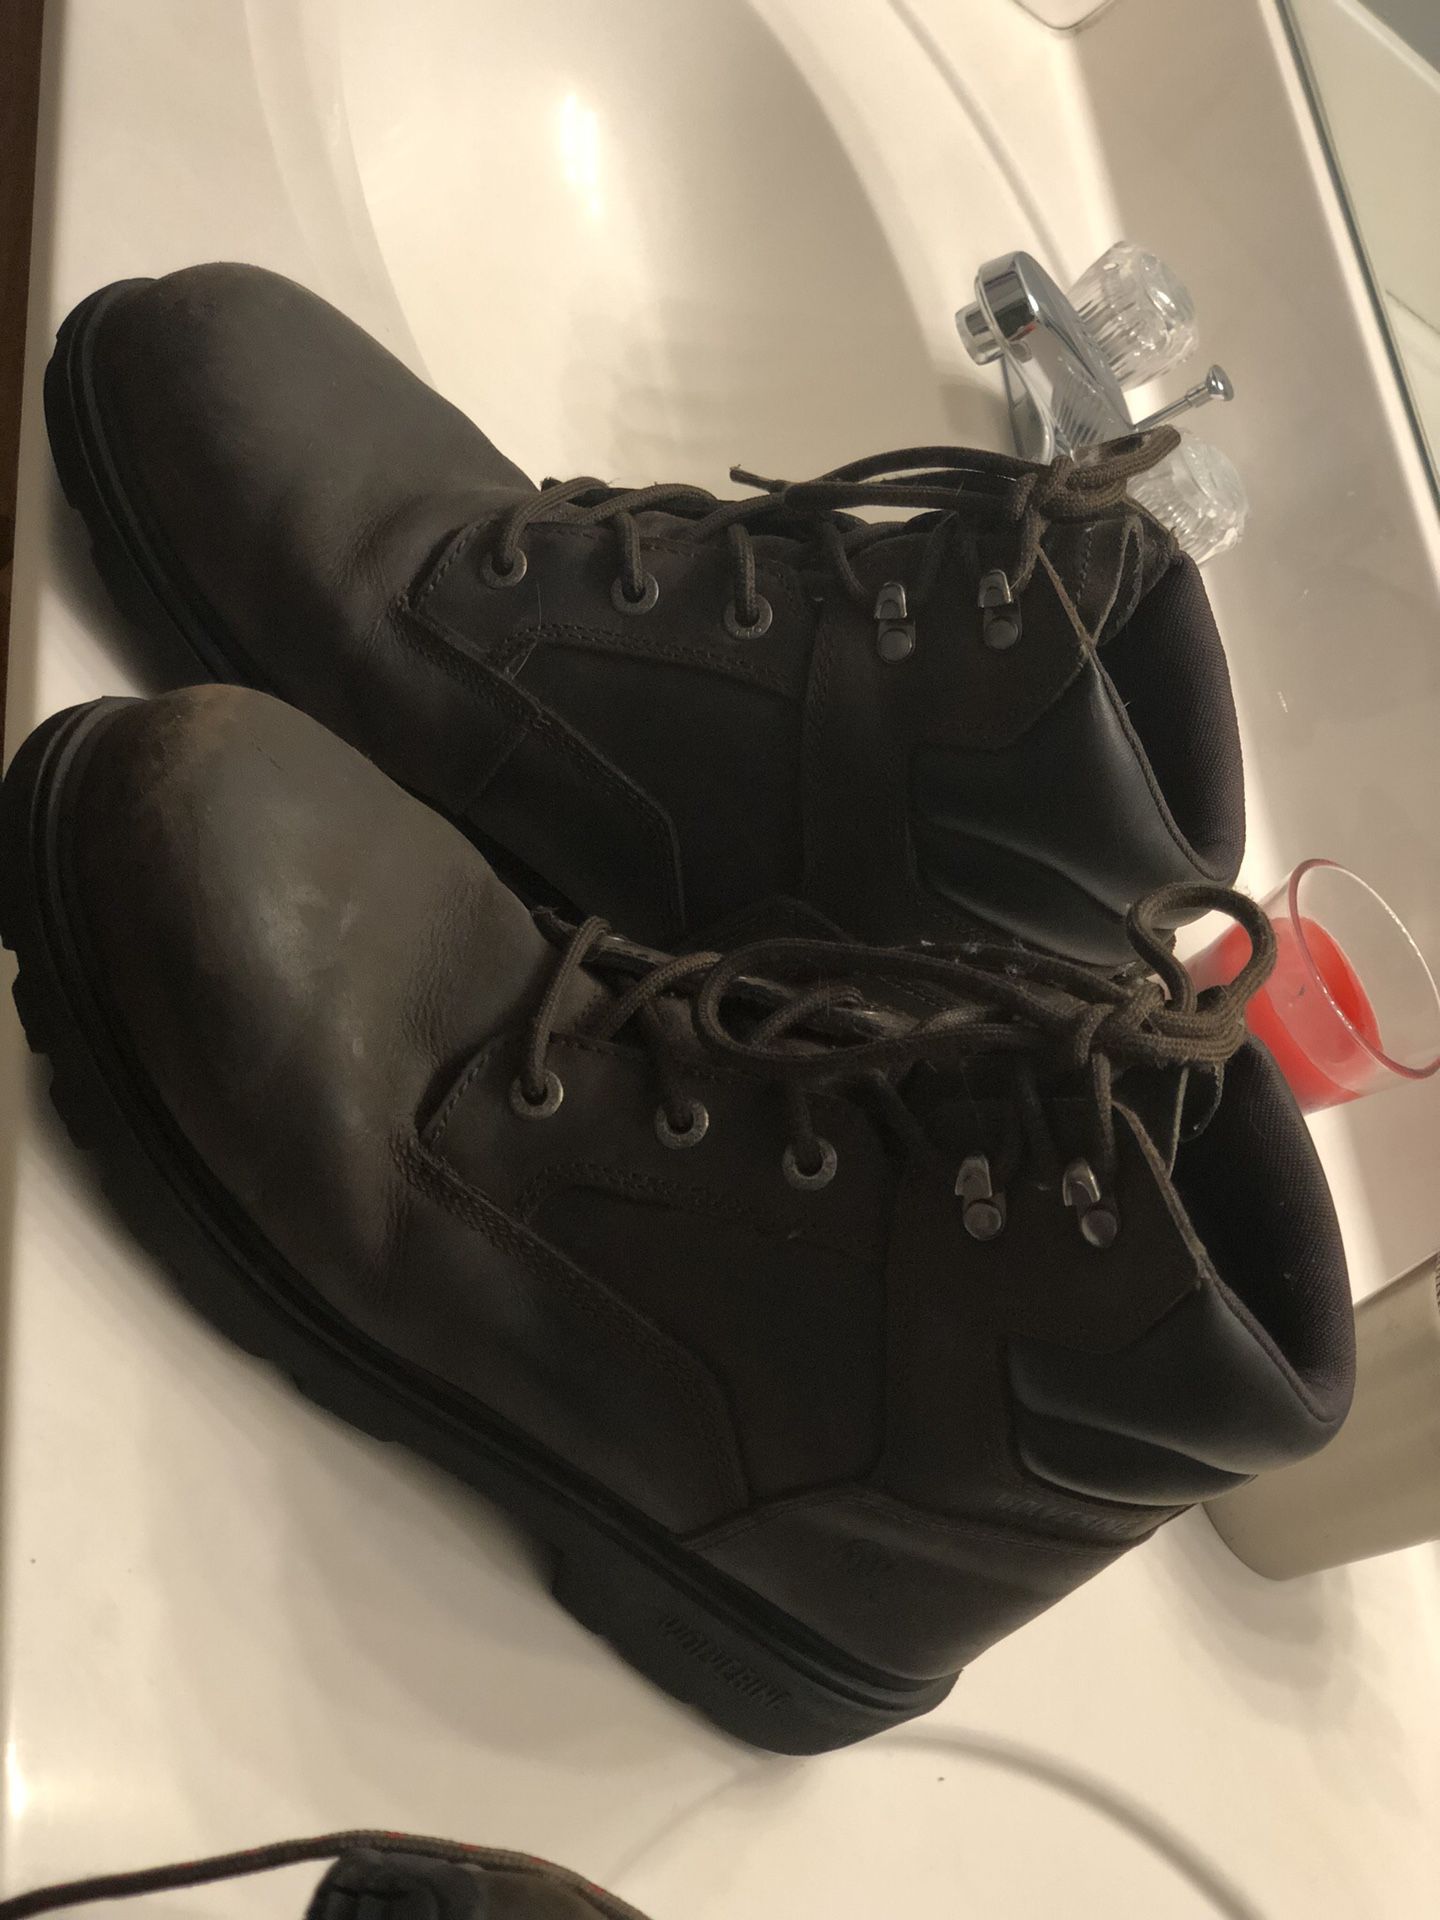 Men’s 10.5 w Wolverine work boots